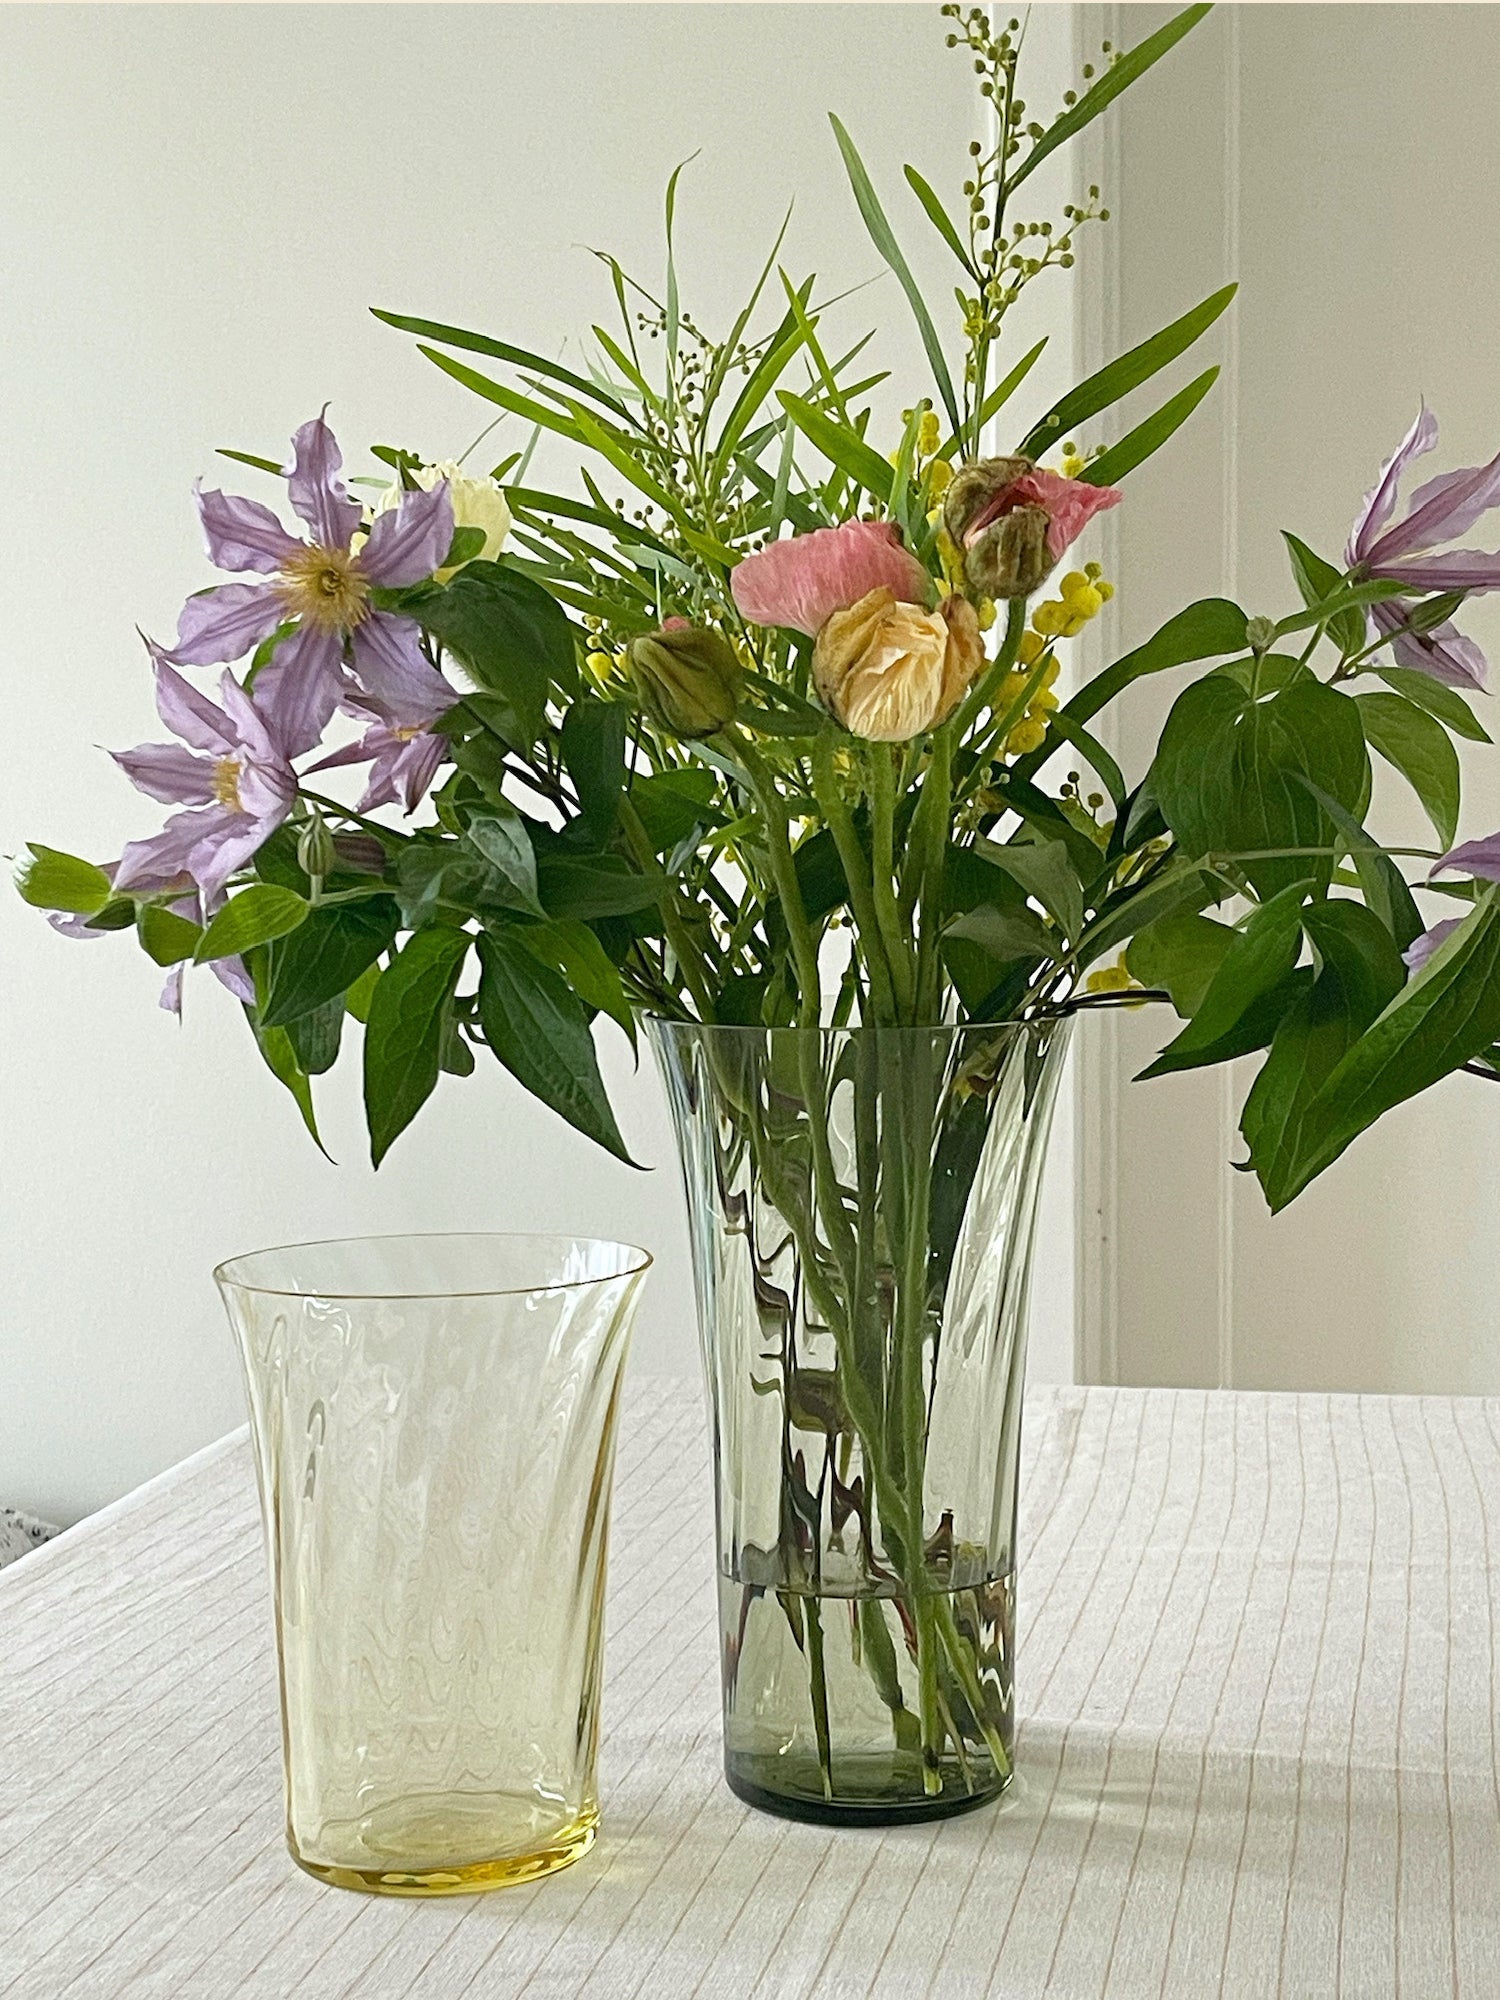 Stilleben Concave Vase - 20 cm⼁Swirl Vase Citrin